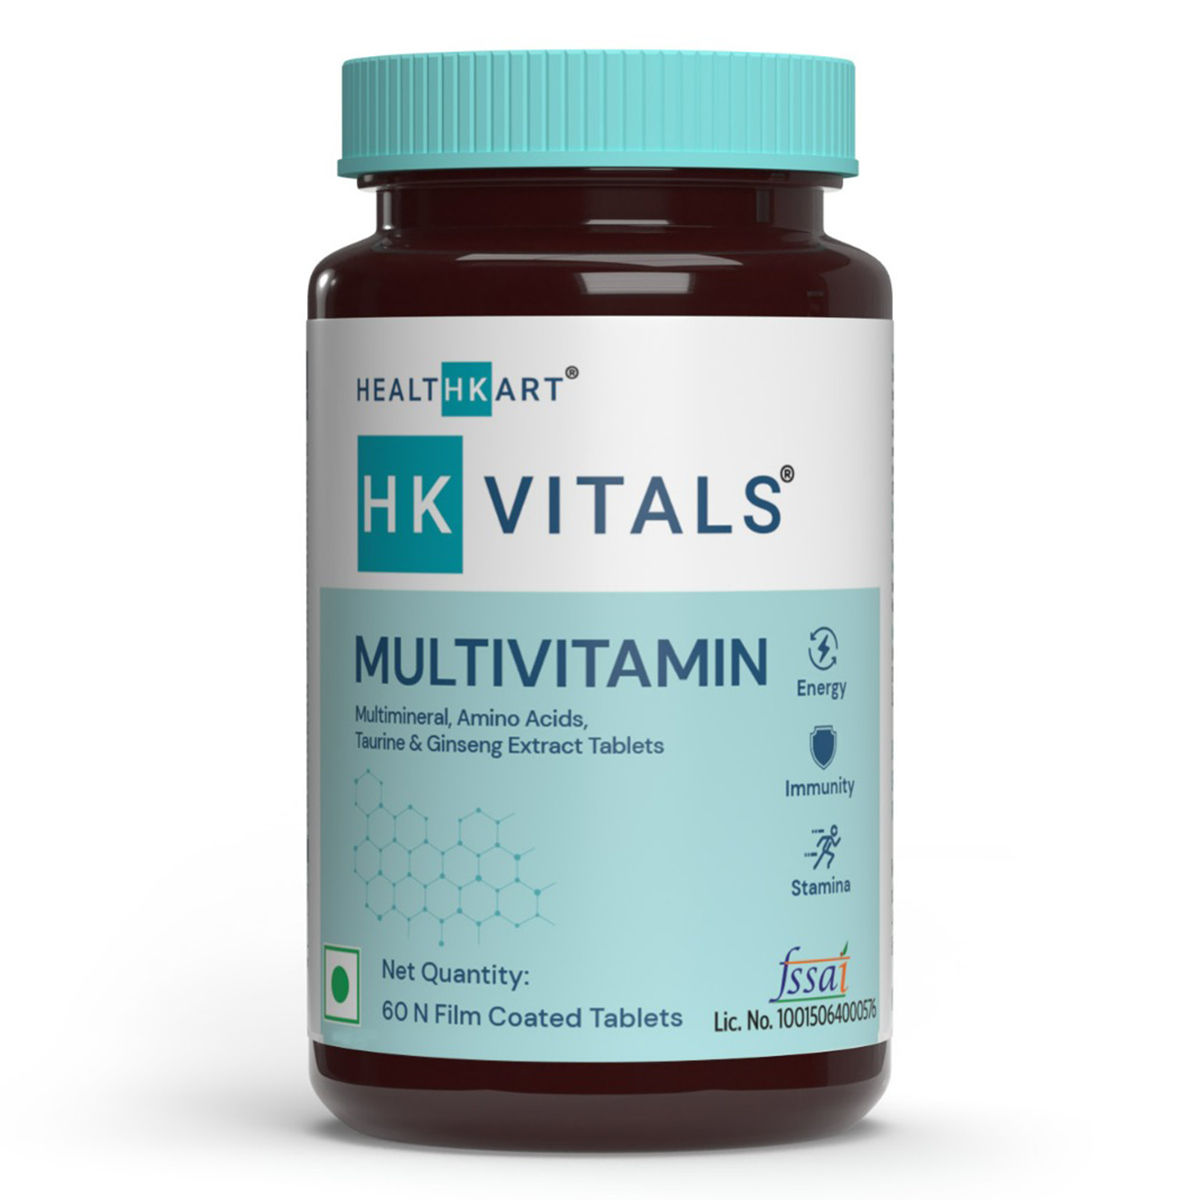 Buy HealthKart HK Vitals Multivitamin, 60 Tablets Online